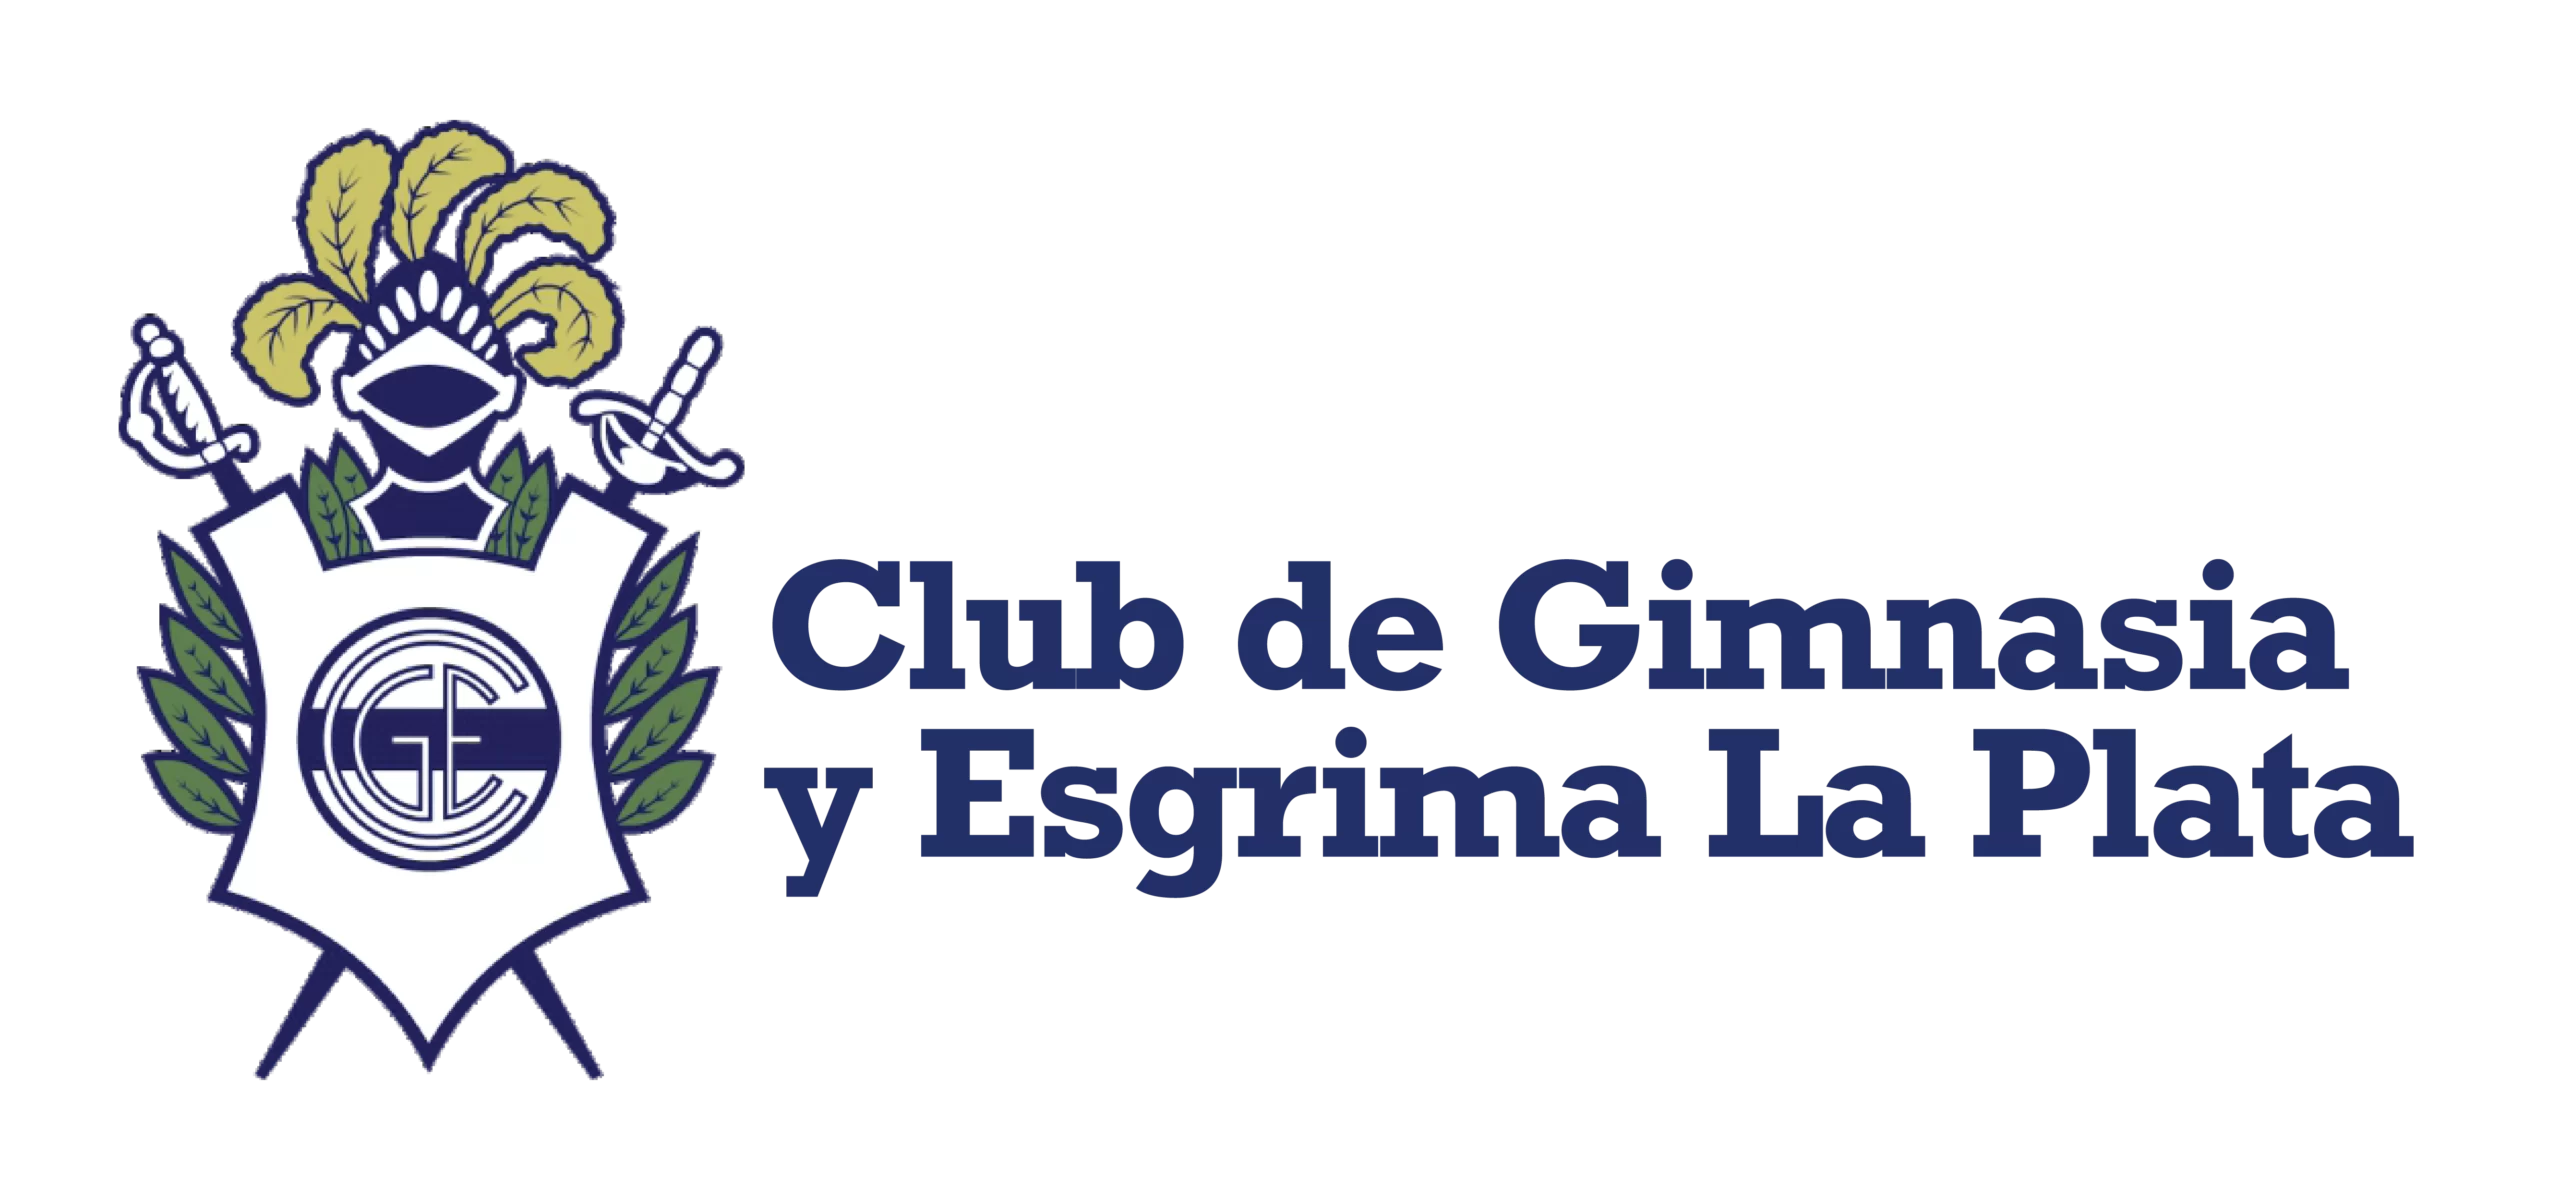 Club de Gimnasia y Esgrima La Plata 